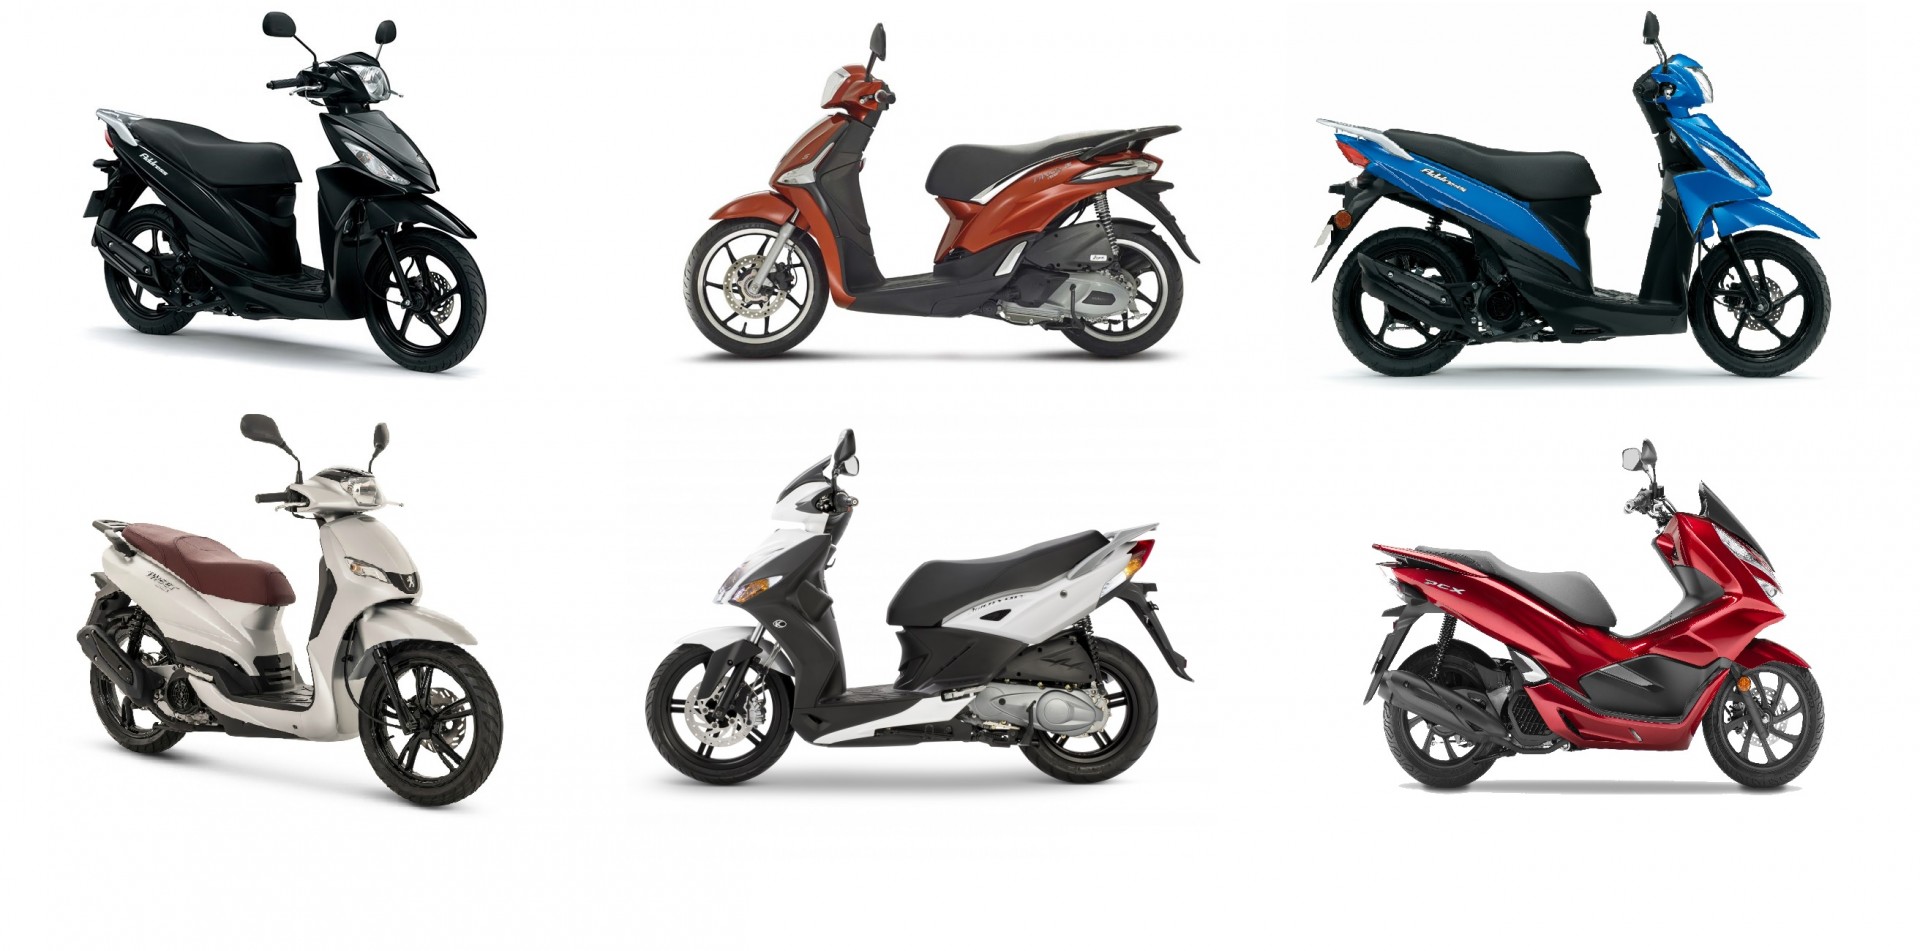 Detallado Dime Alboroto Quiero una buena scooter de 125 para ciudad, ¿qué modelo me compro? -  espíritu RACER moto